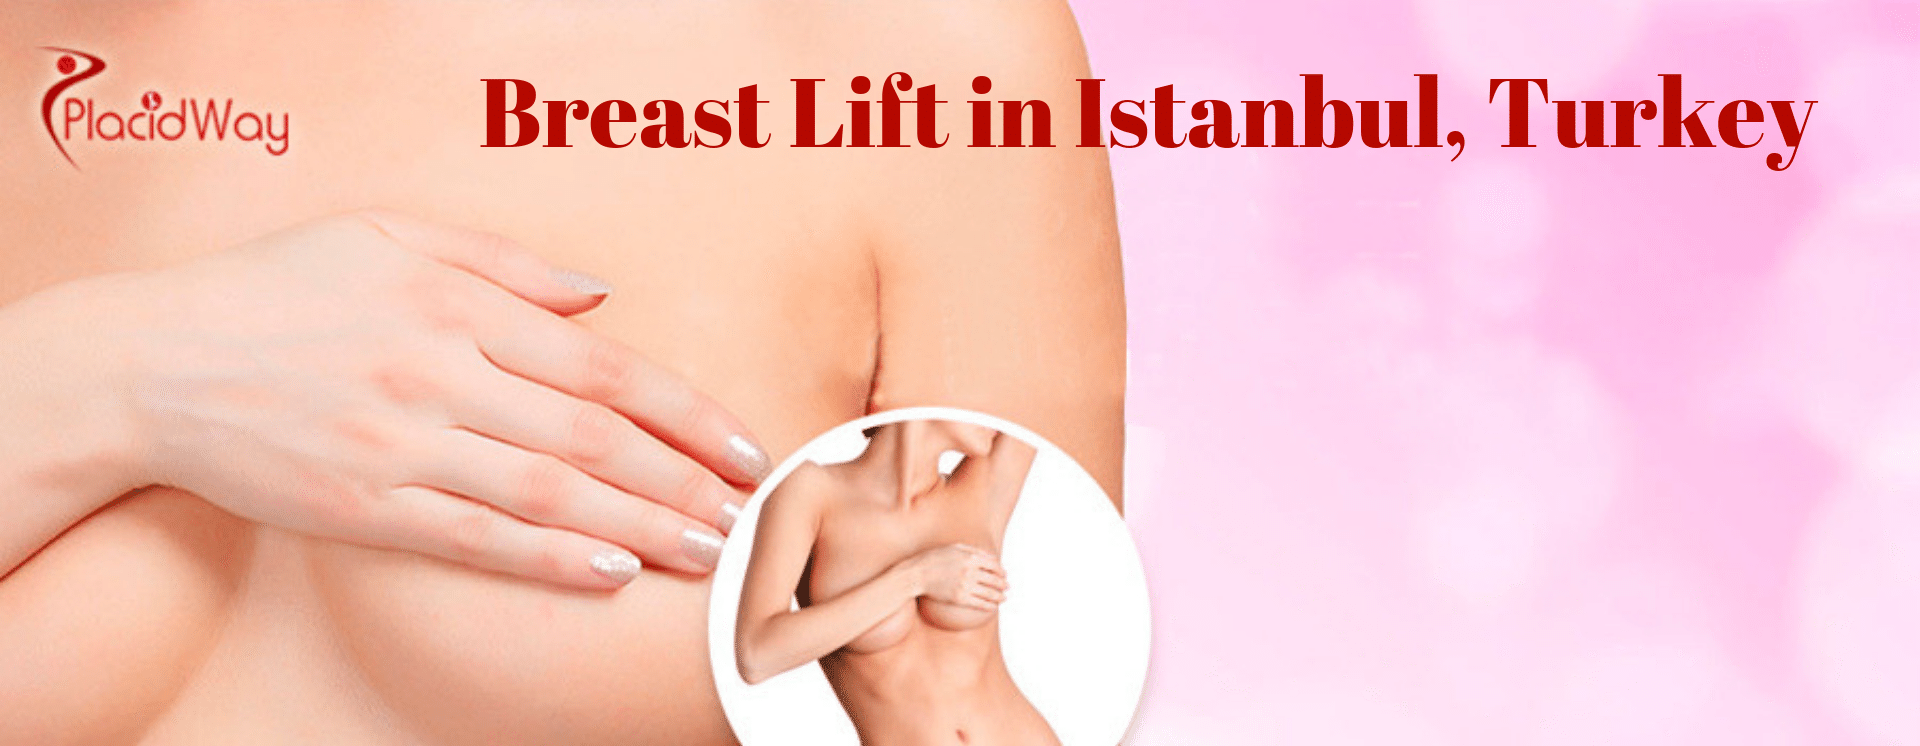 Breast Lift in Istanbul, Turkey